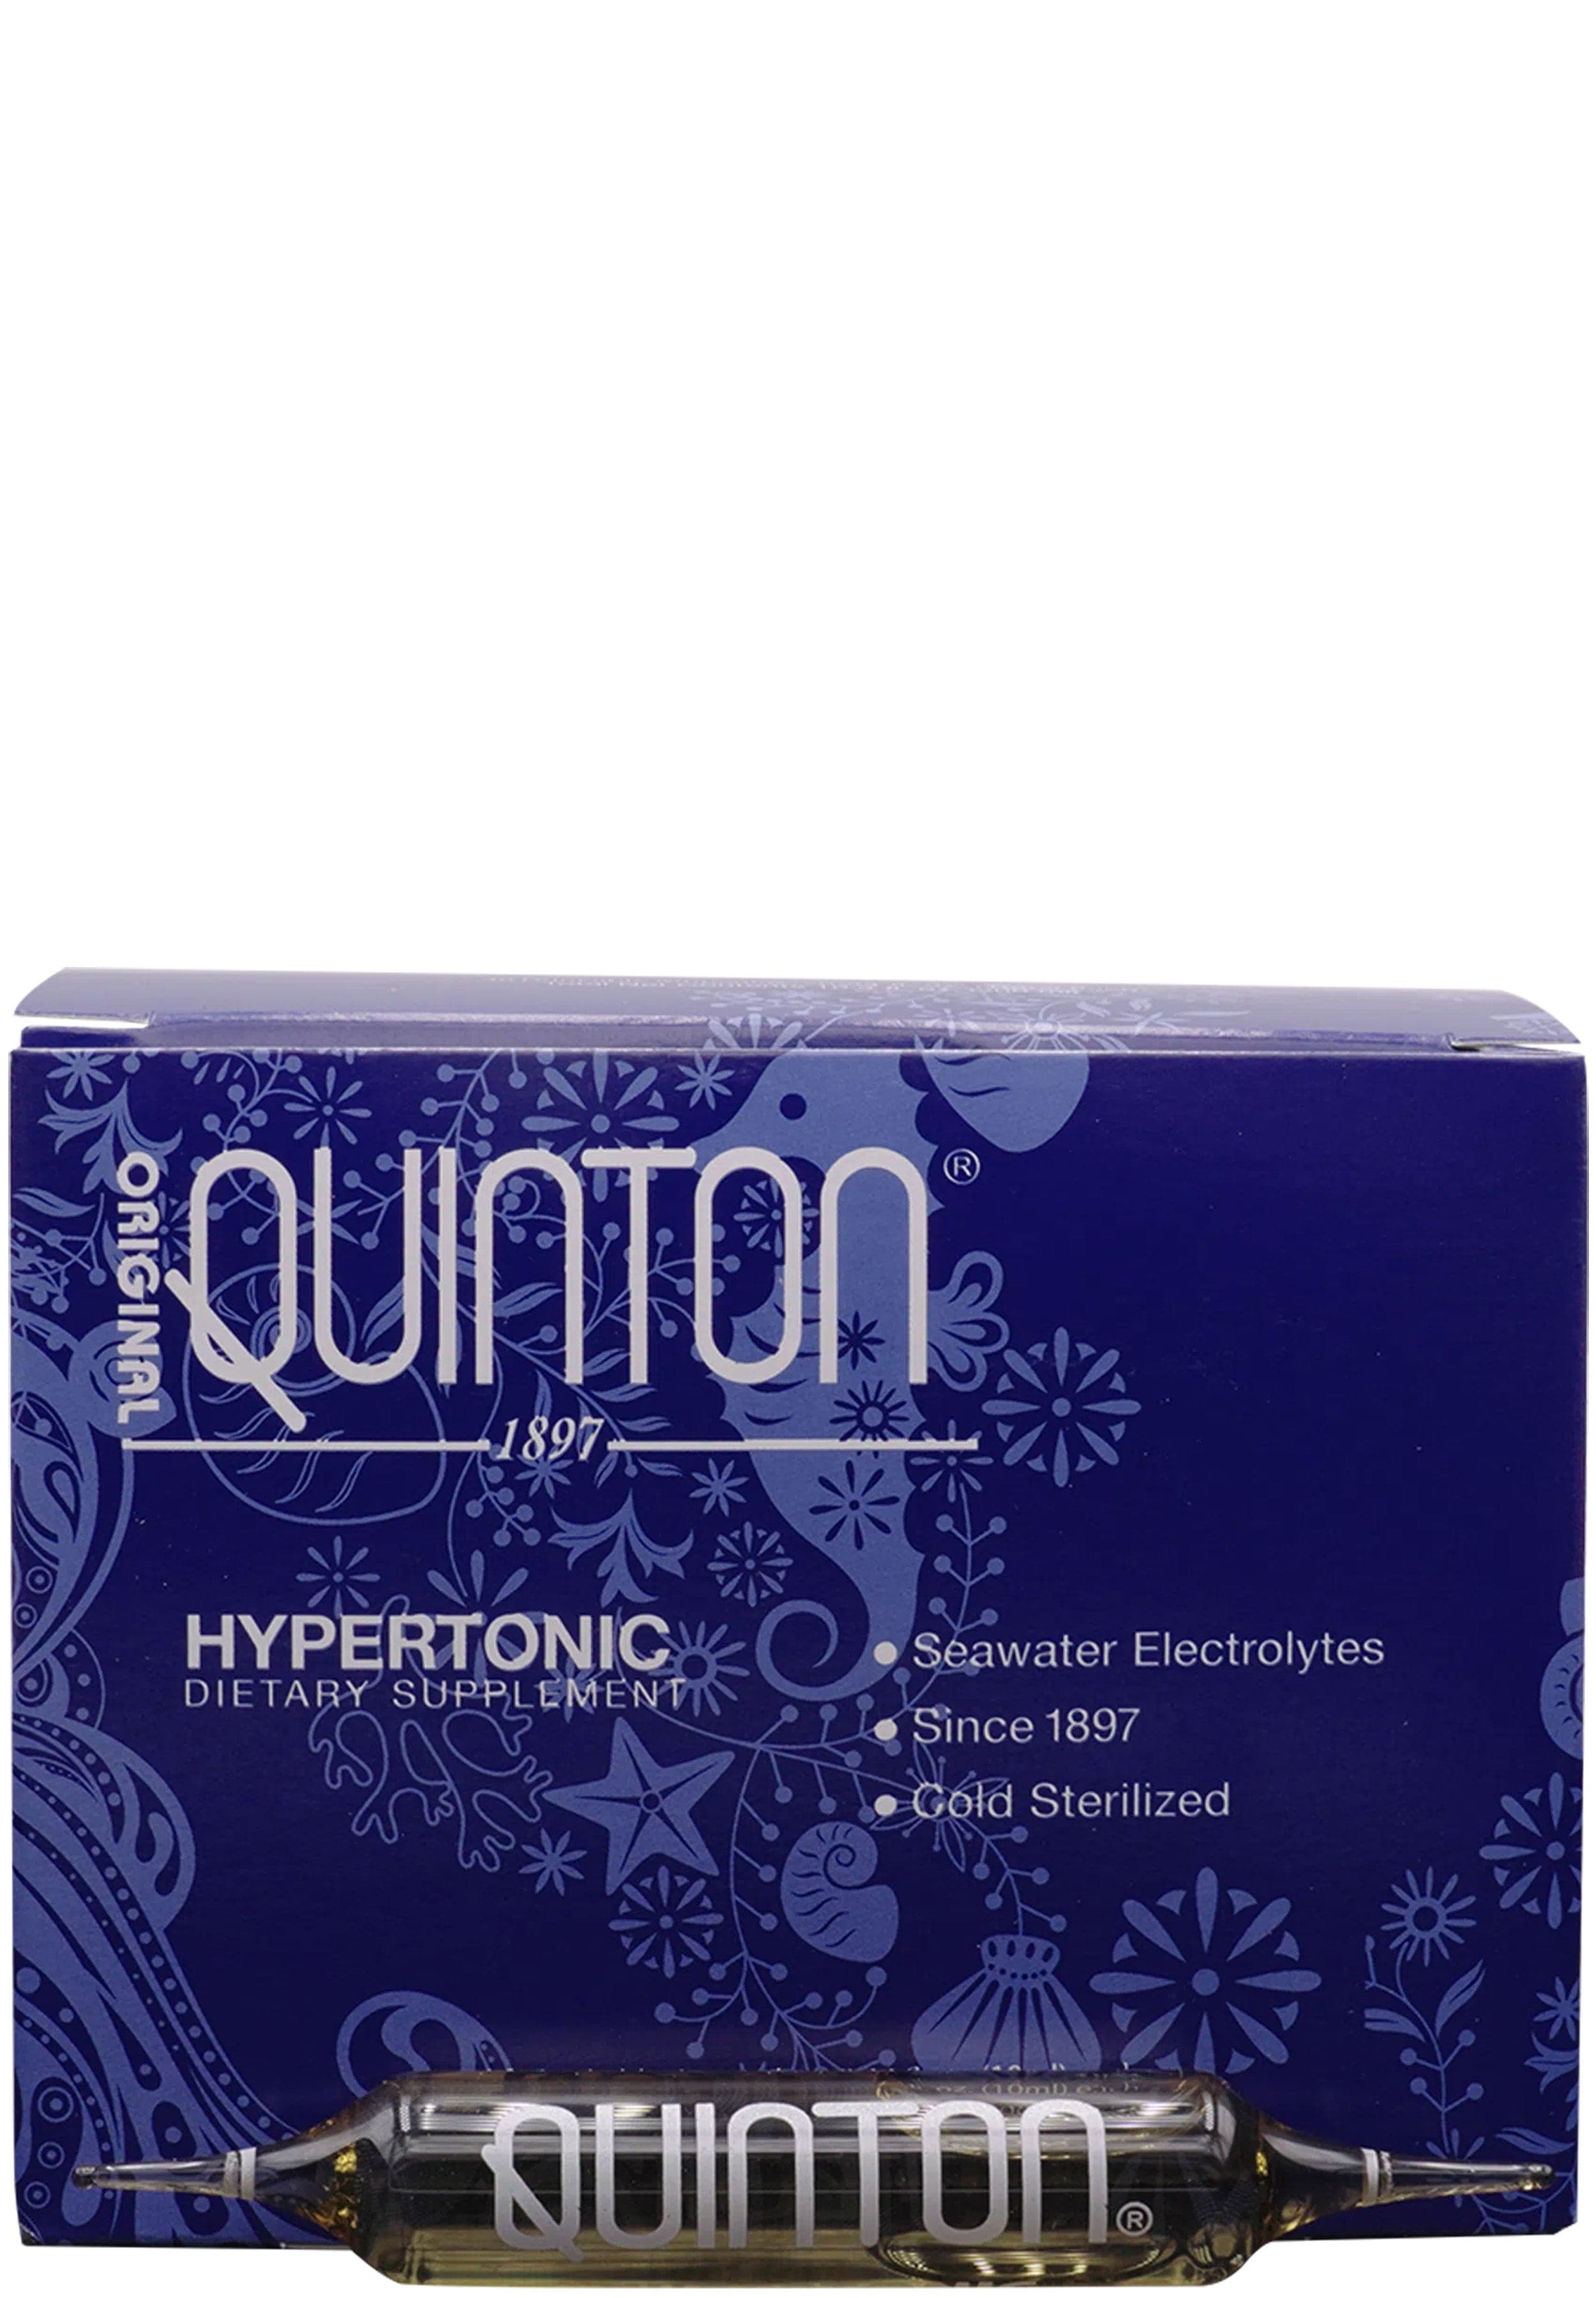 Quicksilver Scientific Original Quinton Hypertonic 3.3 Ampoules 30